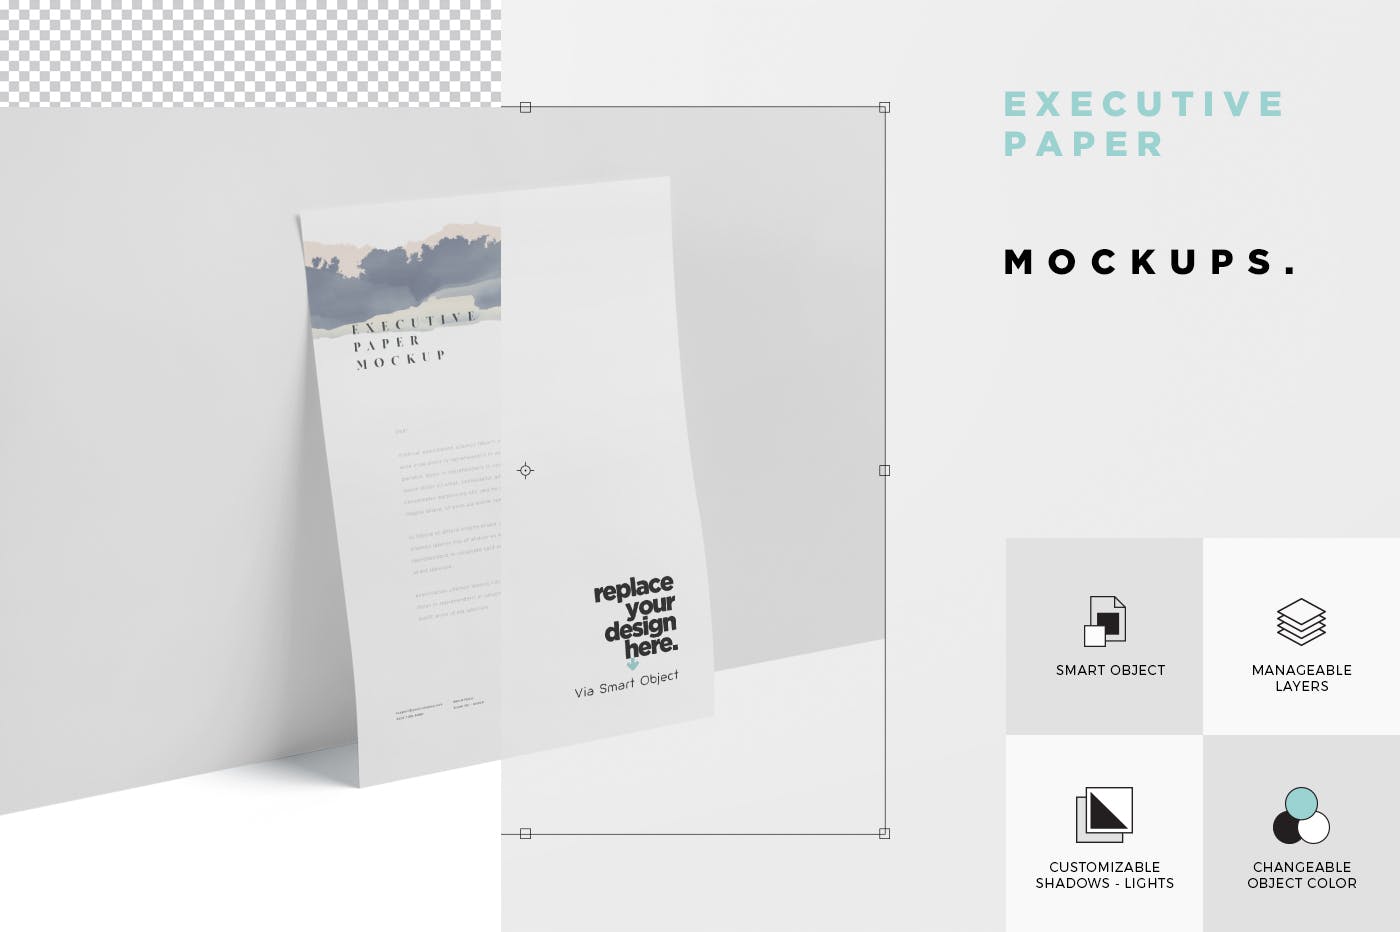 企业宣传单张设计效果图样机普贤居精选 Executive Paper Mockup – 7×10 Inch Size插图(5)